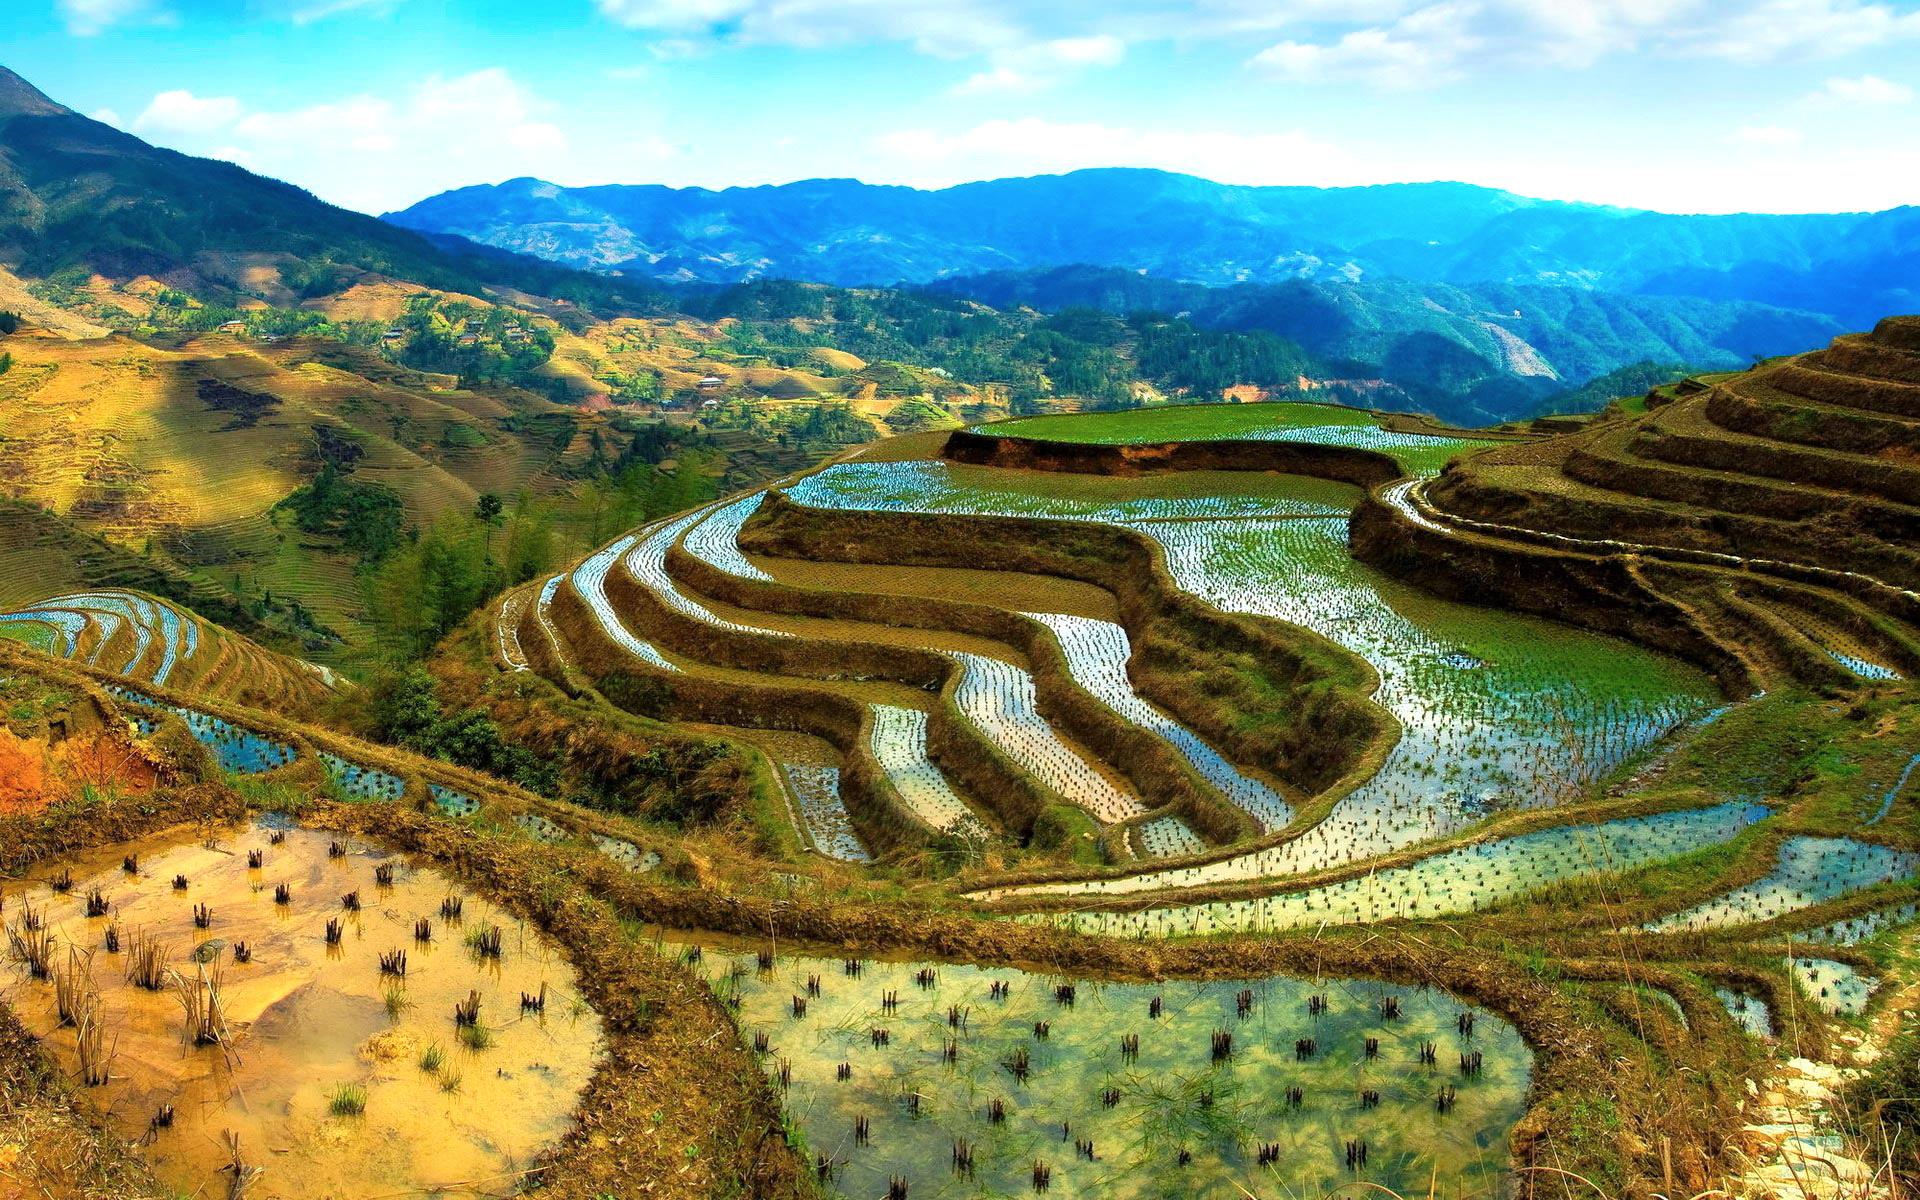 Висячие сады, рисовые поля, горы, терассы, Китай обои для рабочего